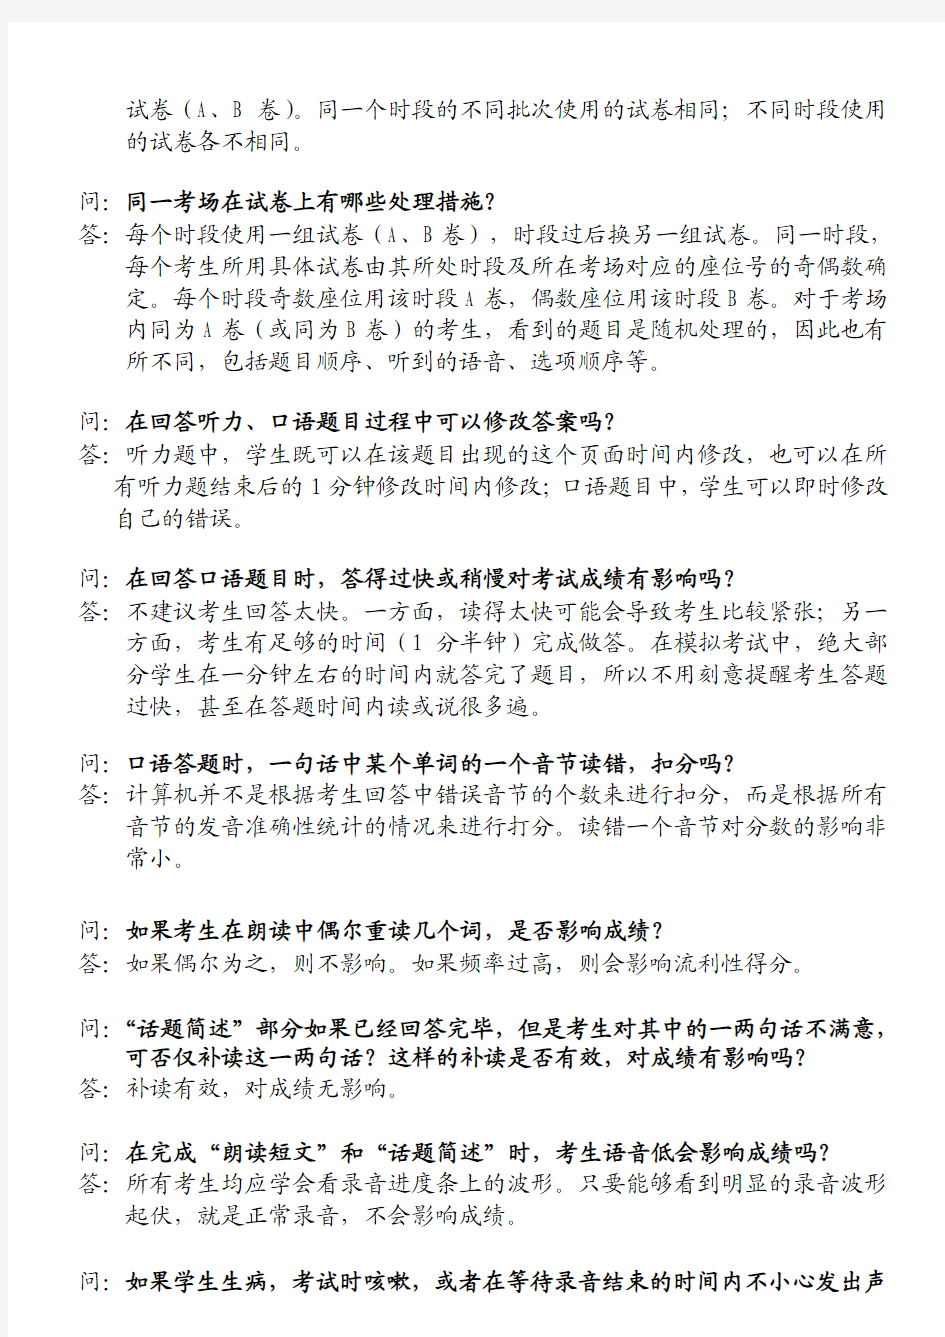 江苏省初中英语听力口语自动化考试 问 题 释 疑